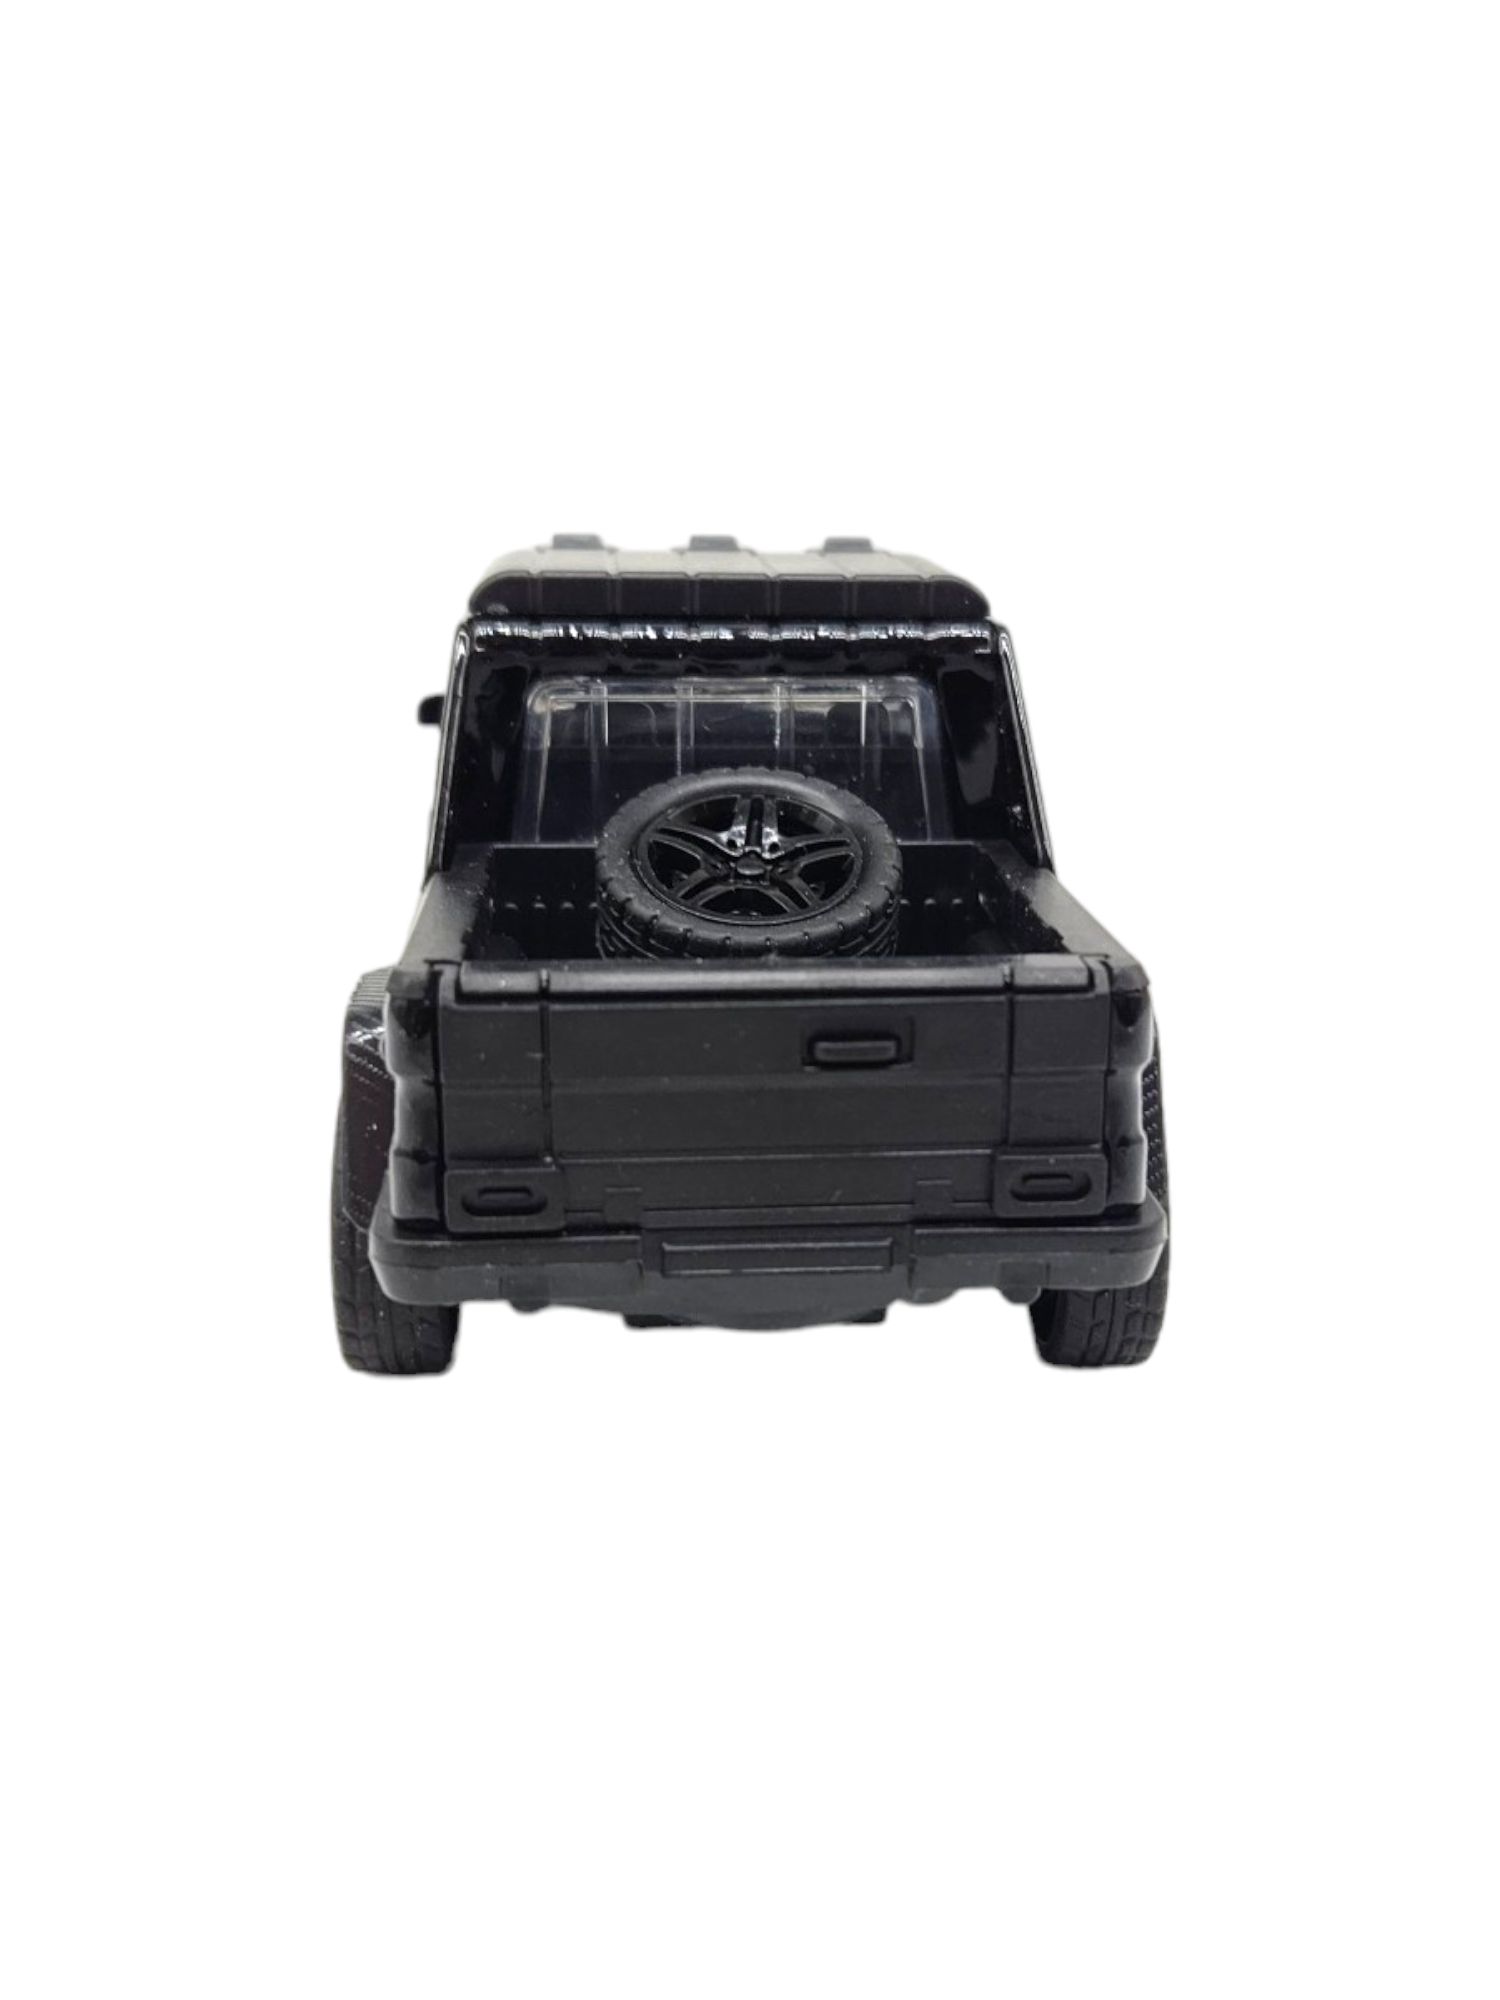 Masinuta metalica Mercedes GCL,usi mobile, sunete,lumini, Negru,11cm